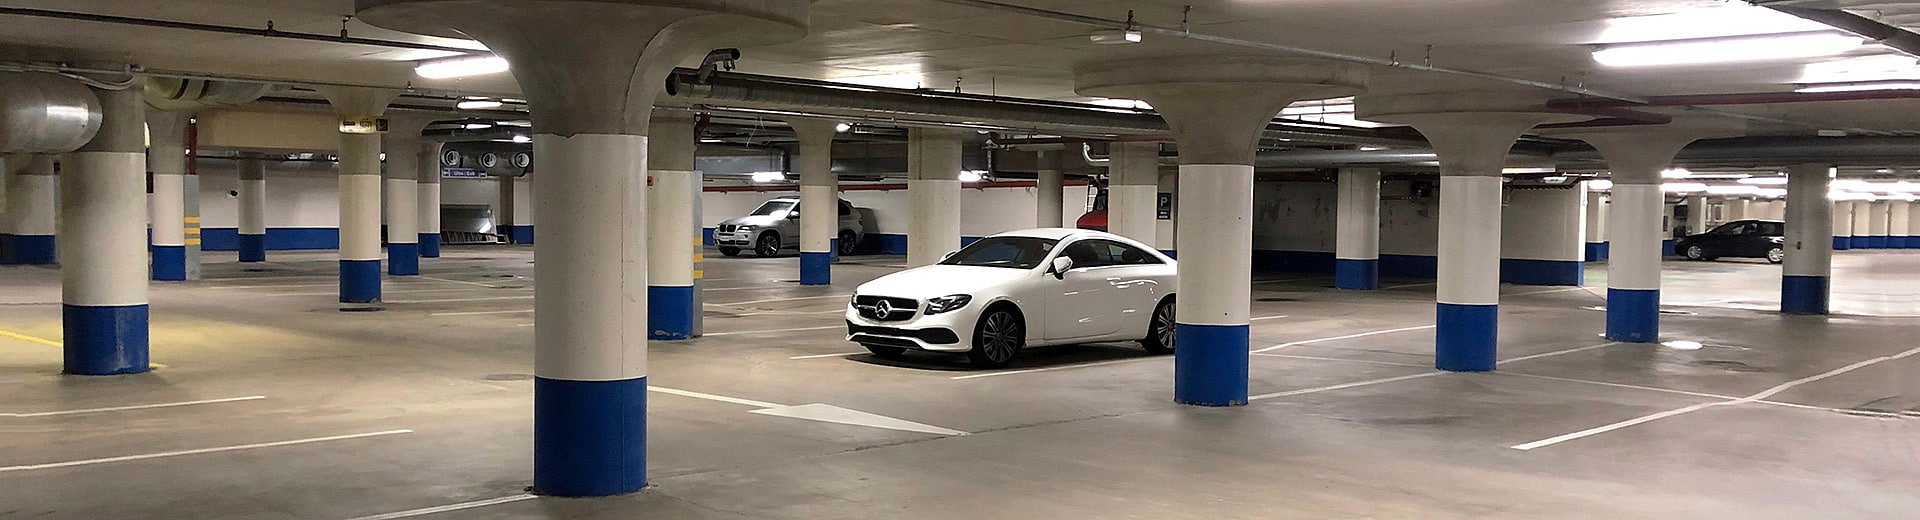 Valokuva parkkihallista, jossa on pysäköitynä muutama auto, lähimpänä valkoinen Mercedes-Benz.